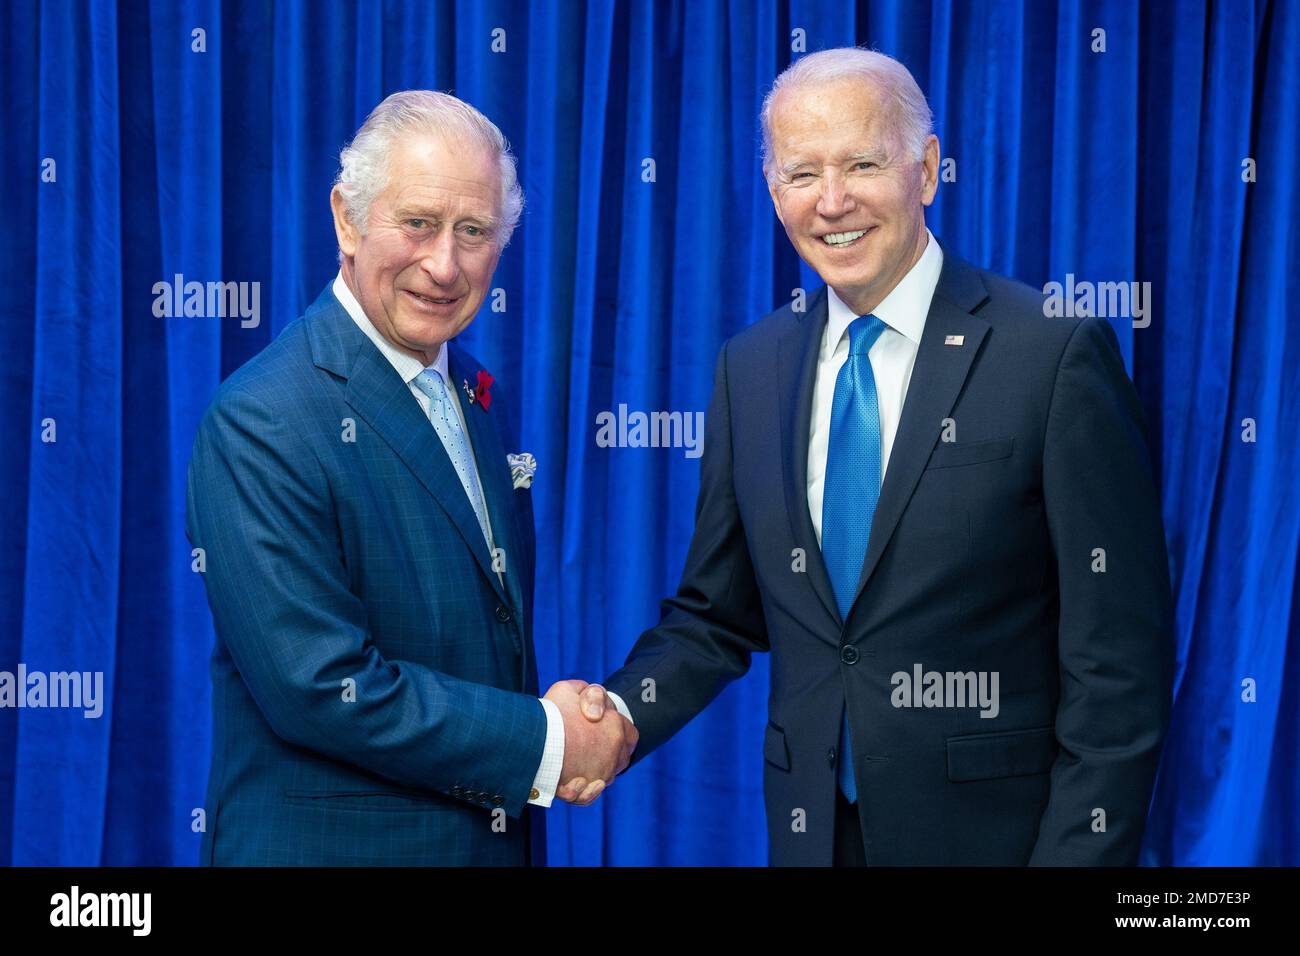 Bericht: Präsident Joe Biden begrüßt Britians Prinz Charles am Dienstag, den 2. November 2021, während der UN COP26 Klimakonferenz auf dem schottischen Event Campus in Glasgow, Schottland Stockfoto